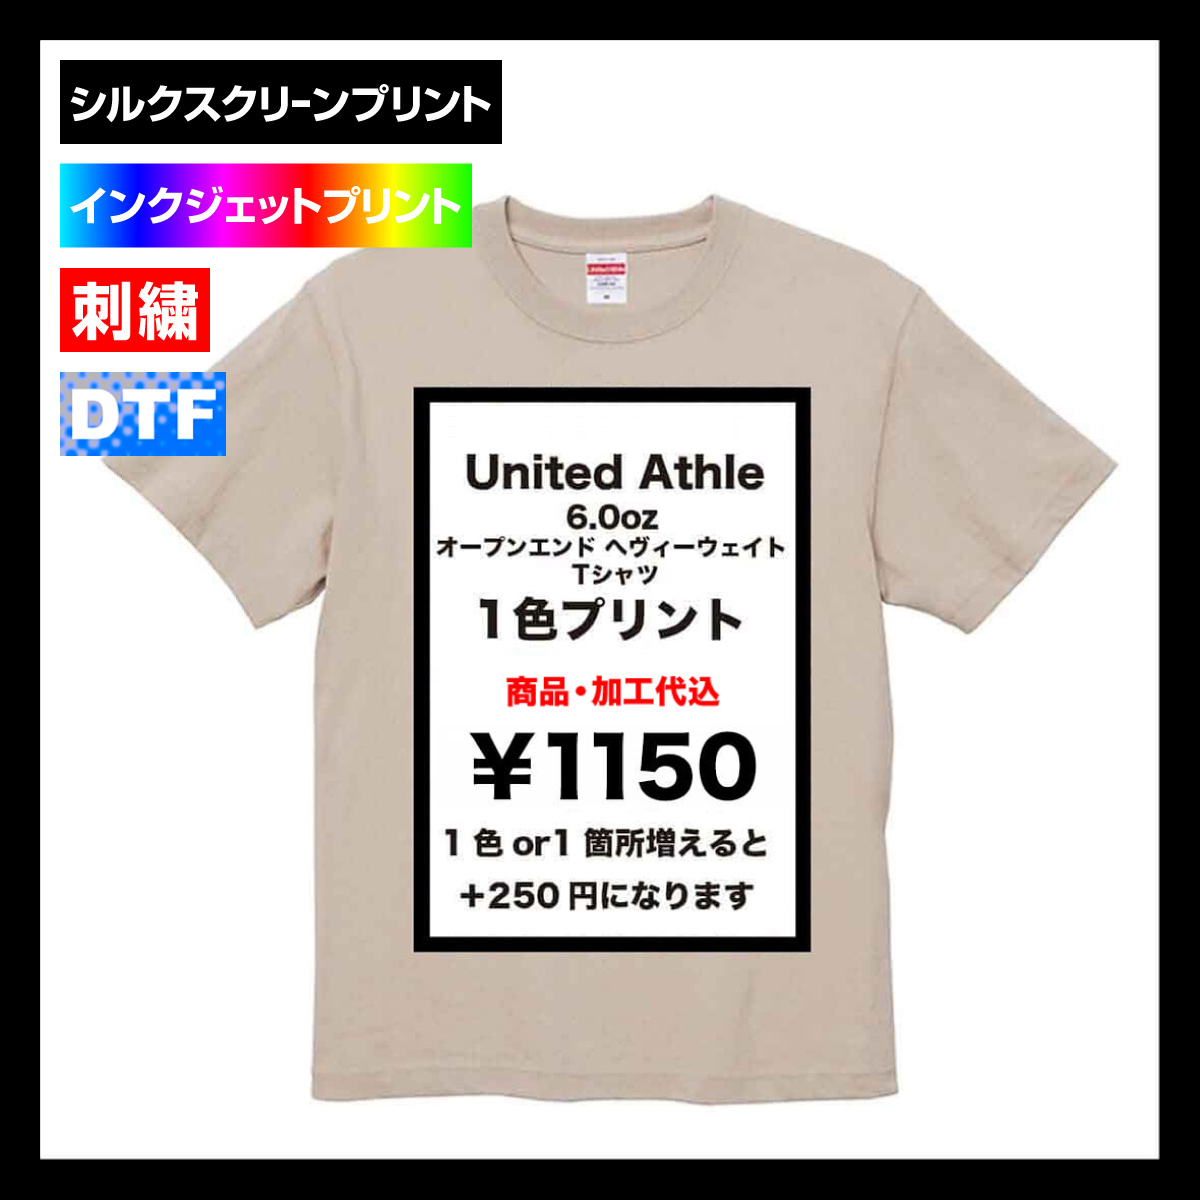 United Athle ユナイテッドアスレ 6.0 oz オープンエンド へヴィーウェイト Tシャツ (品番4208-01)